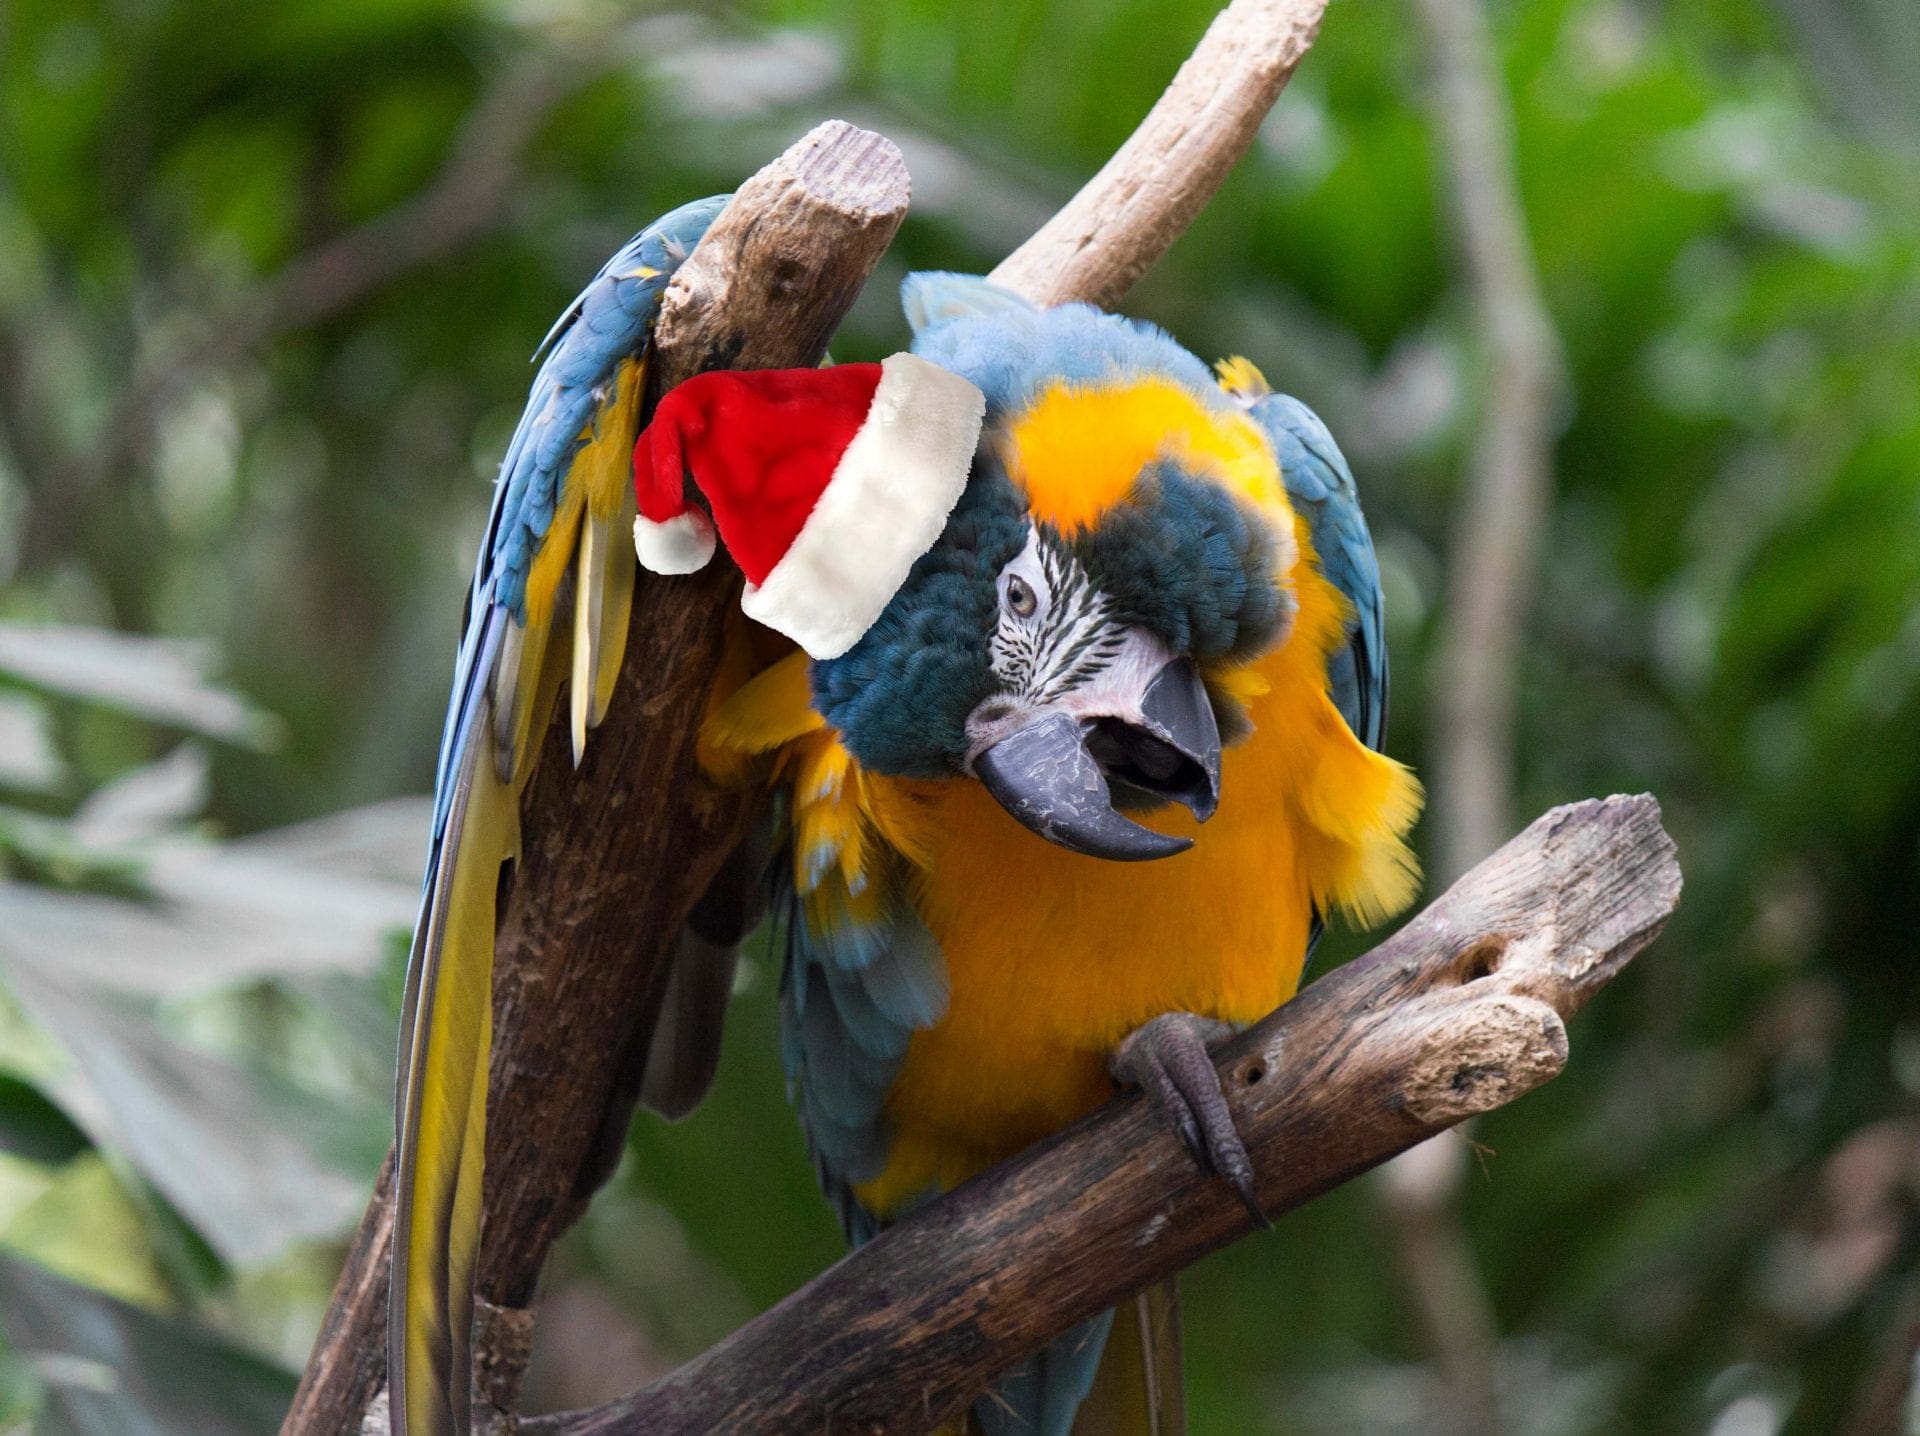 Macaw wearing Santa hat